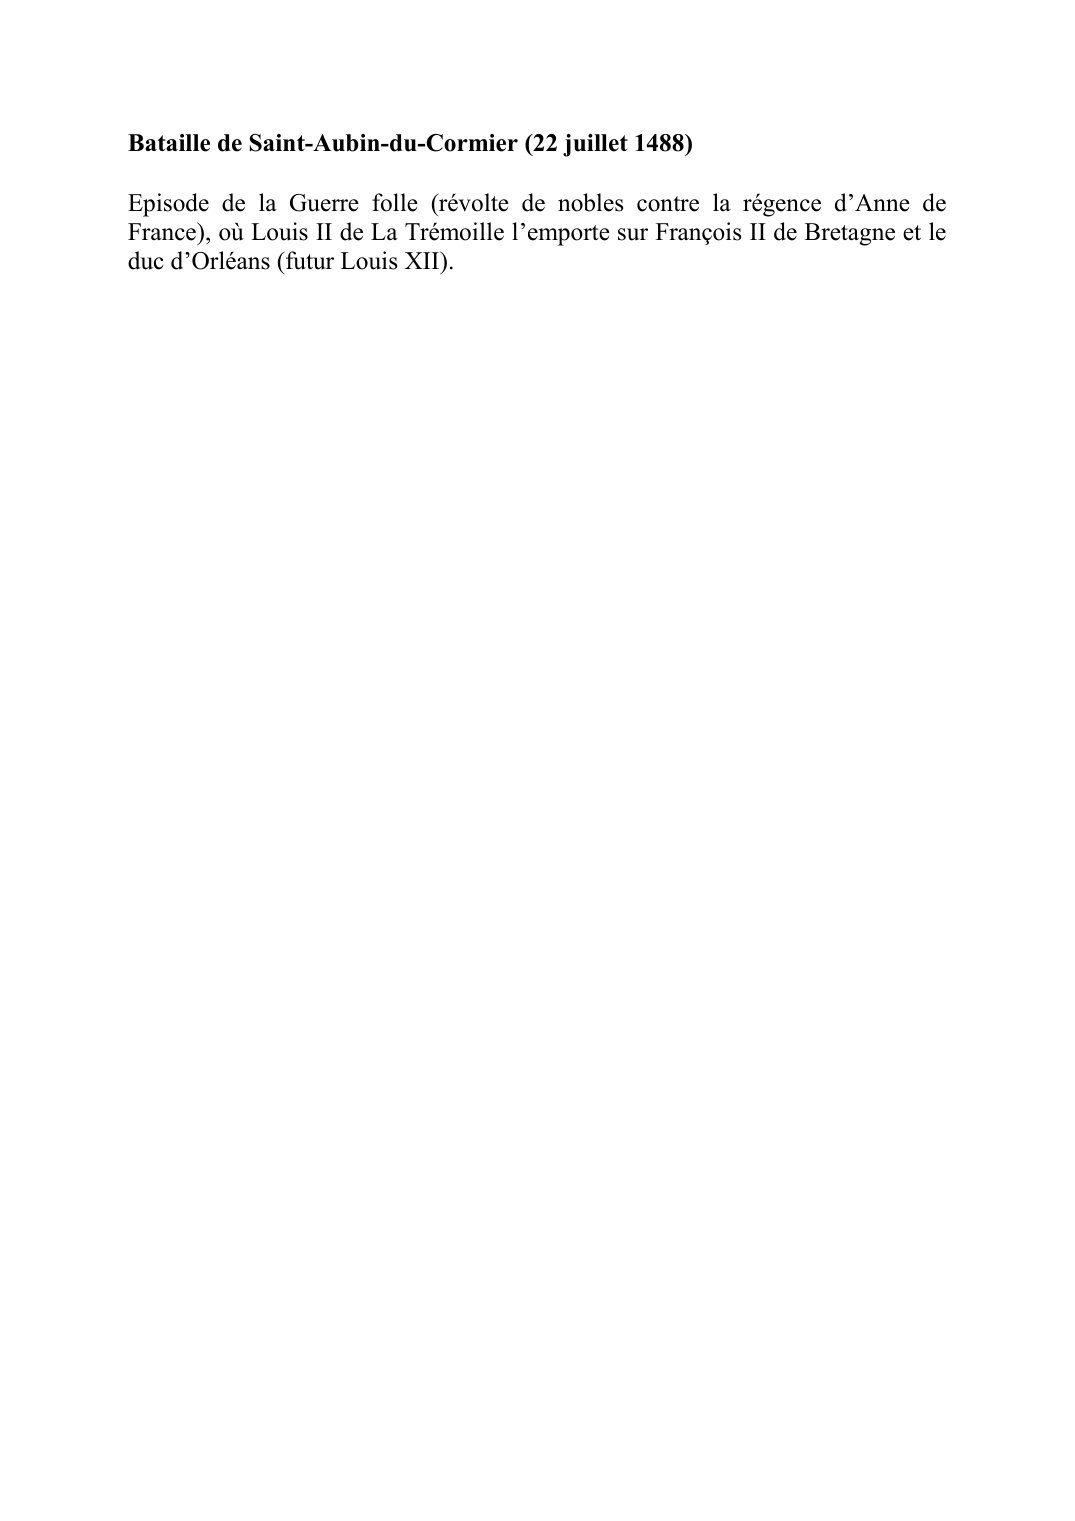 Prévisualisation du document Bataille de Saint-Aubin-du-Cormier (22 juillet 1488)Episode de la Guerre folle (révolte de nobles contre la régence d'Anne de France), où Louis II de La Trémoille l'emporte sur François II de Bretagne et le duc d'Orléans (futur Louis XII).